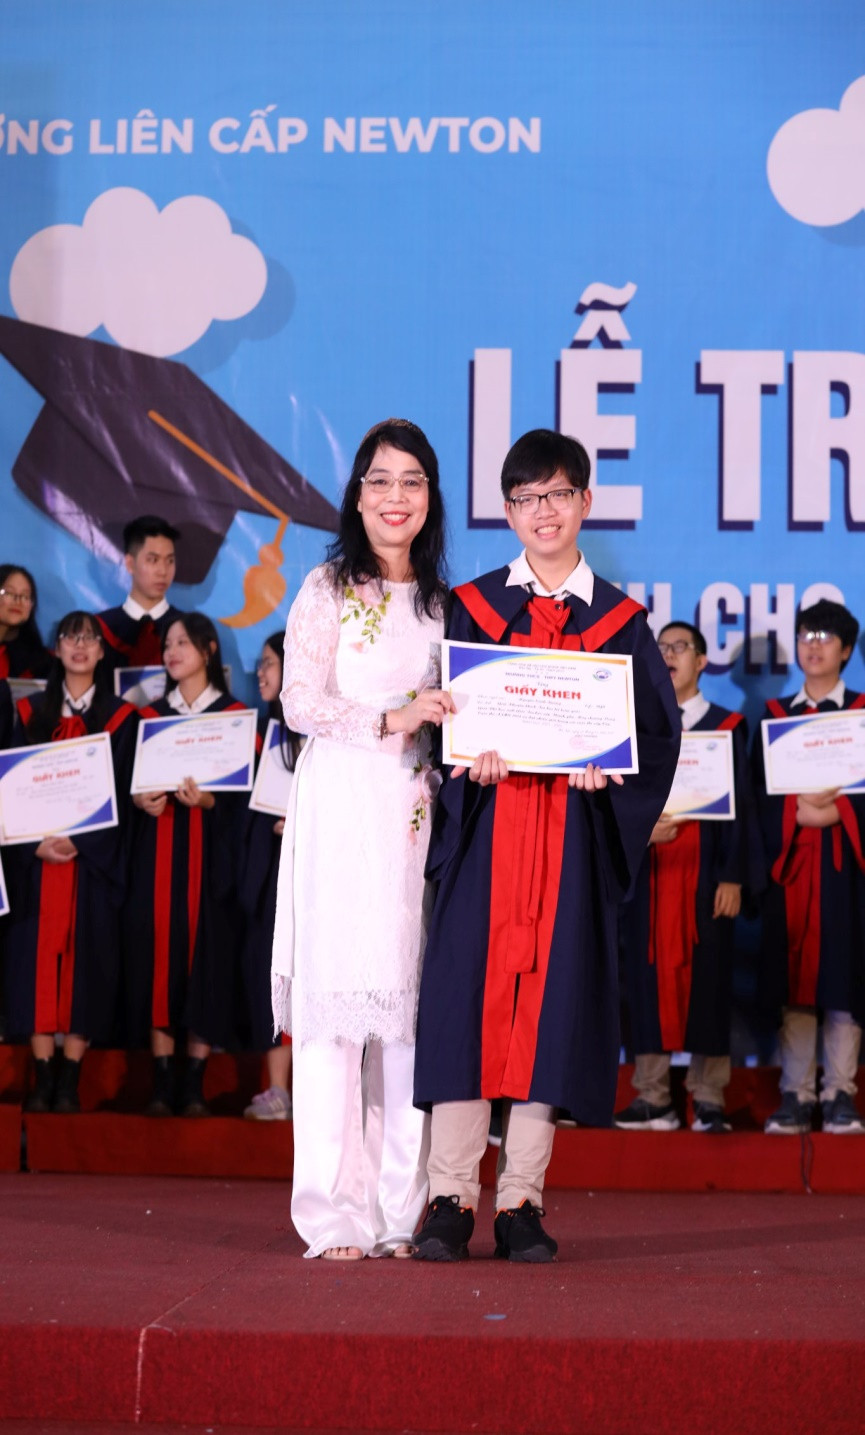 Nhà giáo Lê Thị Bích Dung - Phó Chủ tịch HĐQT Hệ thống trường Liên cấp Newton trao Giấy khen cho Nguyễn Cảnh Dương.